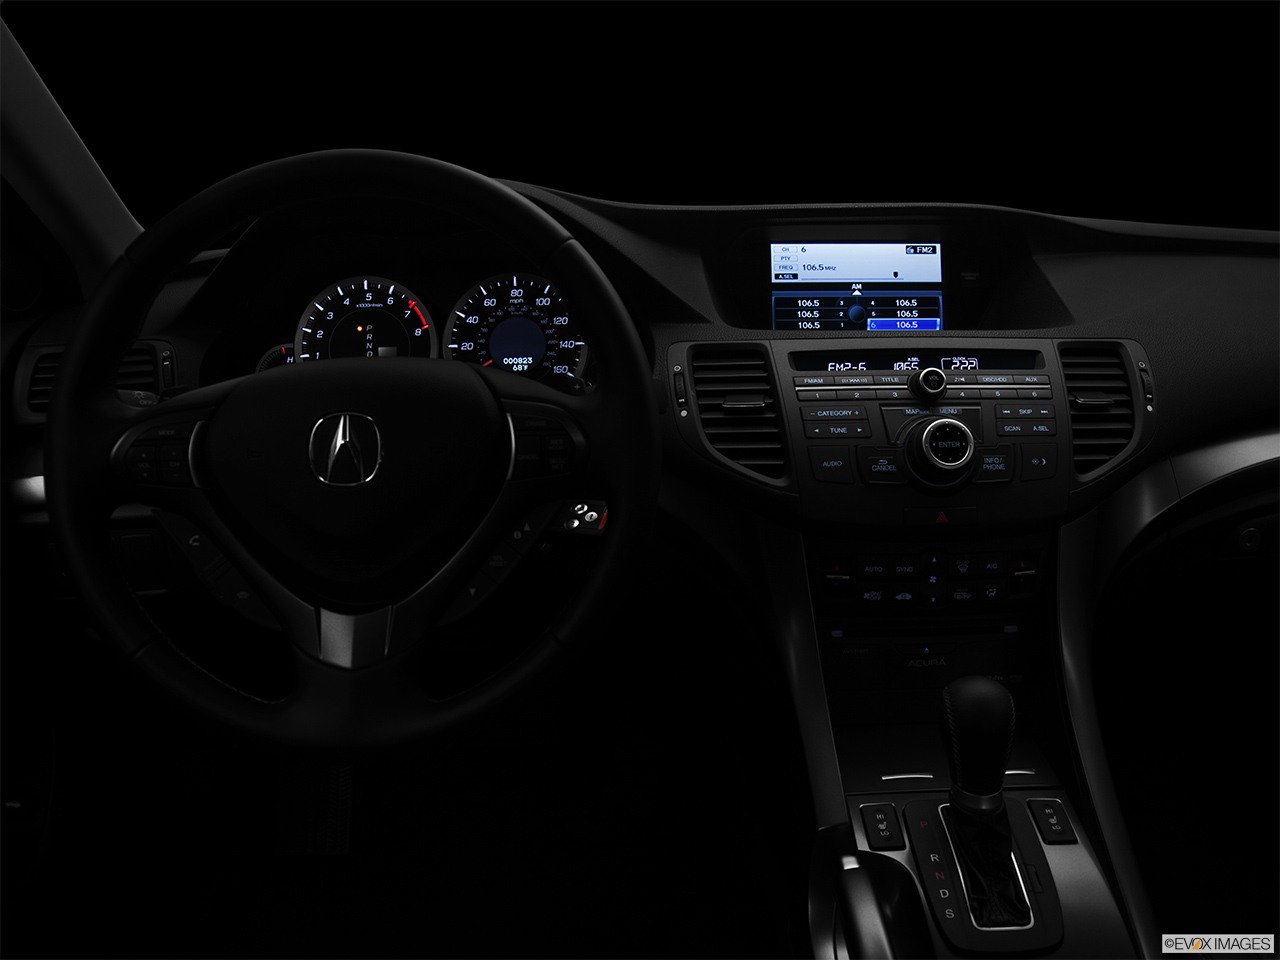 2012 Acura TSX V6 Centered wide dash shot - "night" shot. 